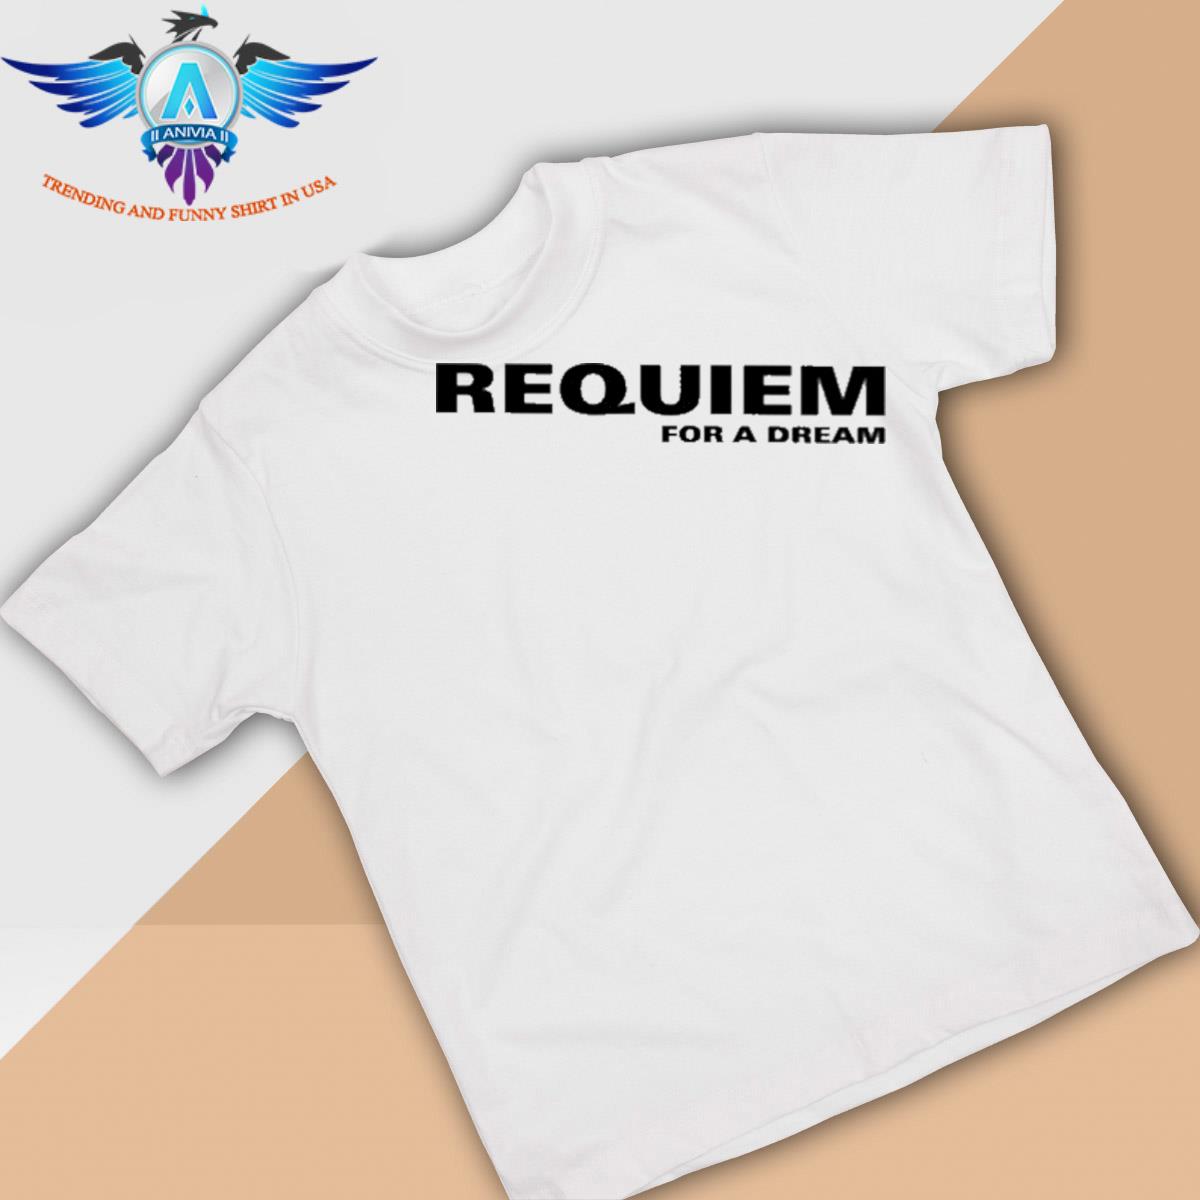 Requiem for a dream shirt